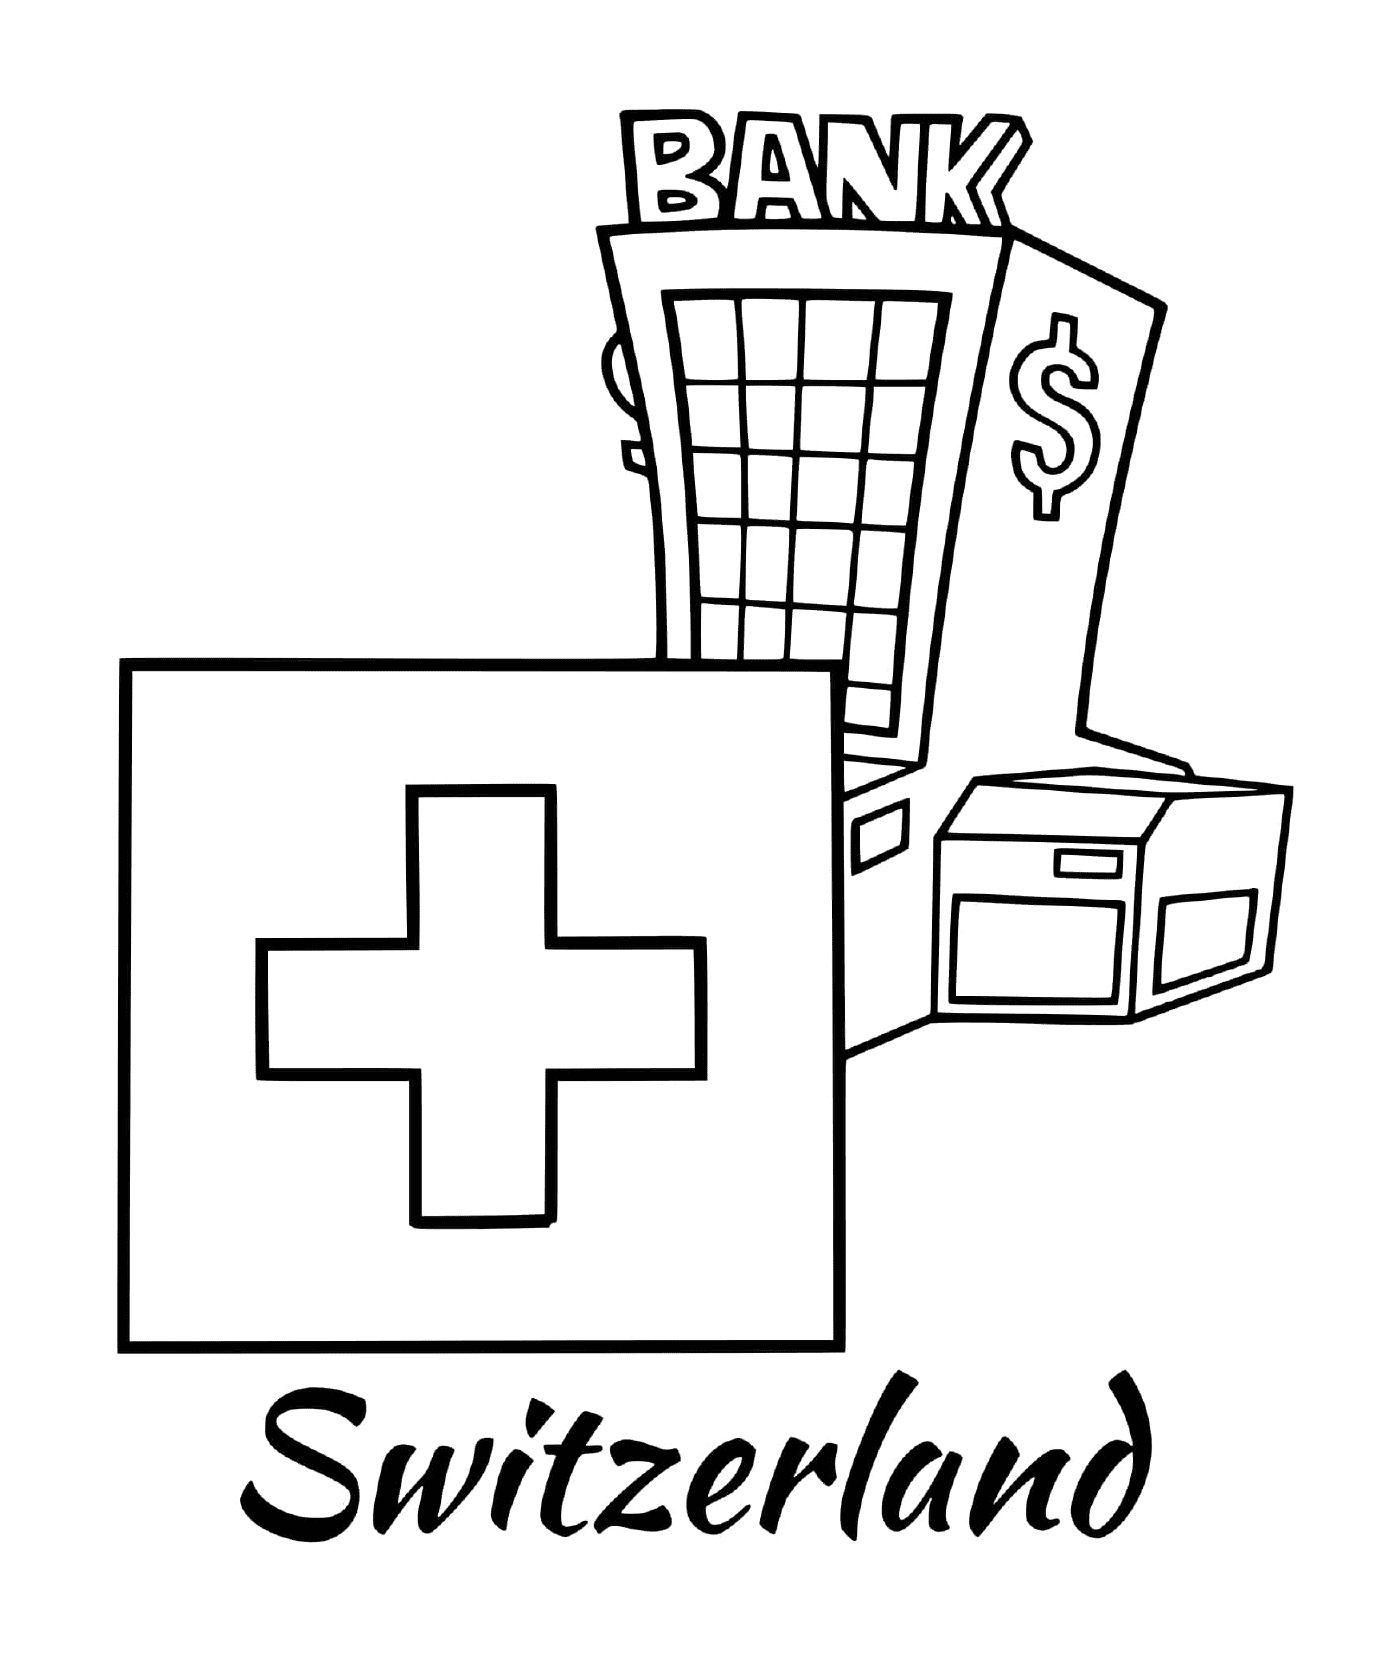  Bandiera Svizzera con banca 